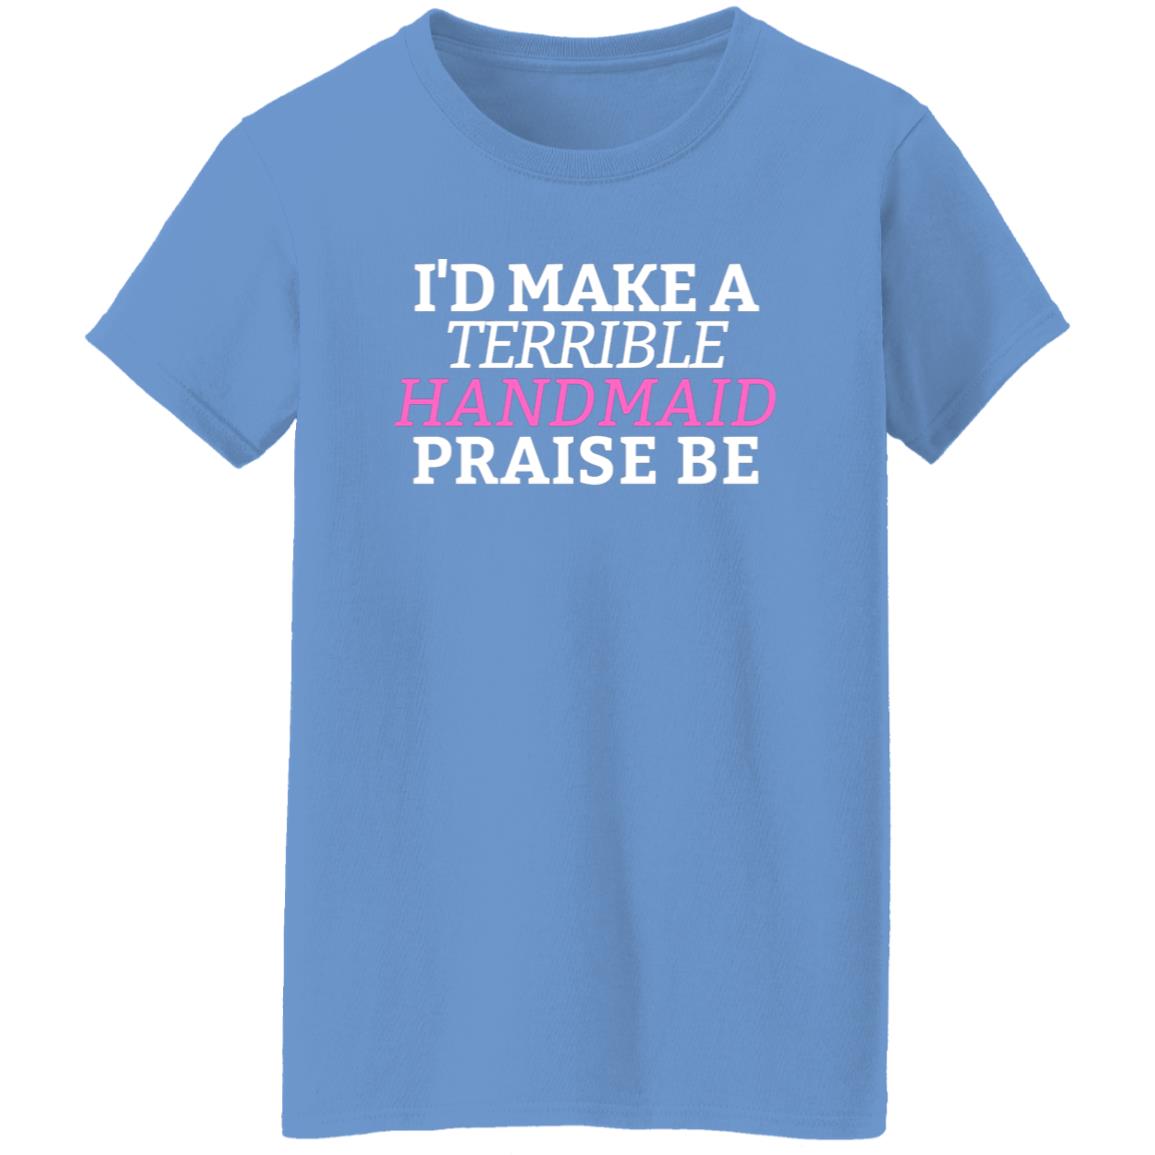 I'd Make A Terrible Handmaid. Praise Be. T-Shirt